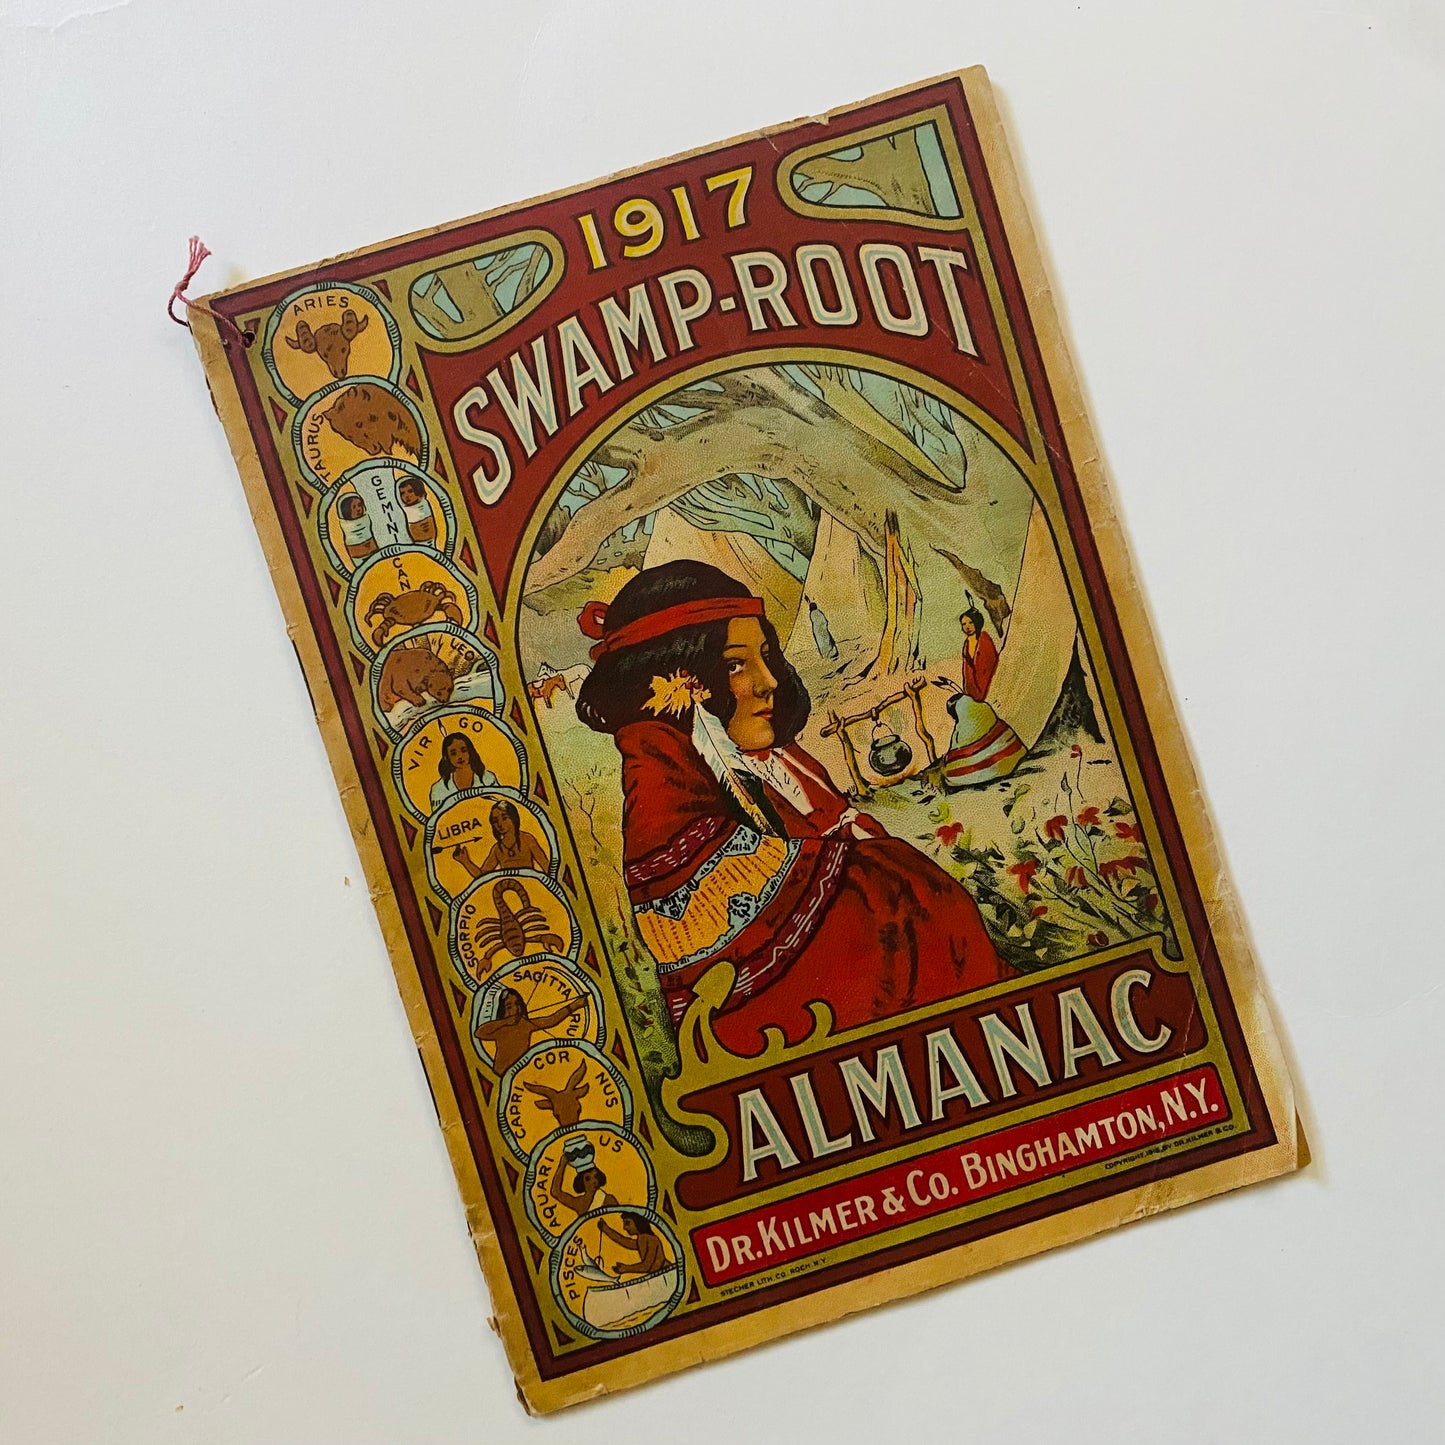 Rare 1917 Swamp Root Almanac